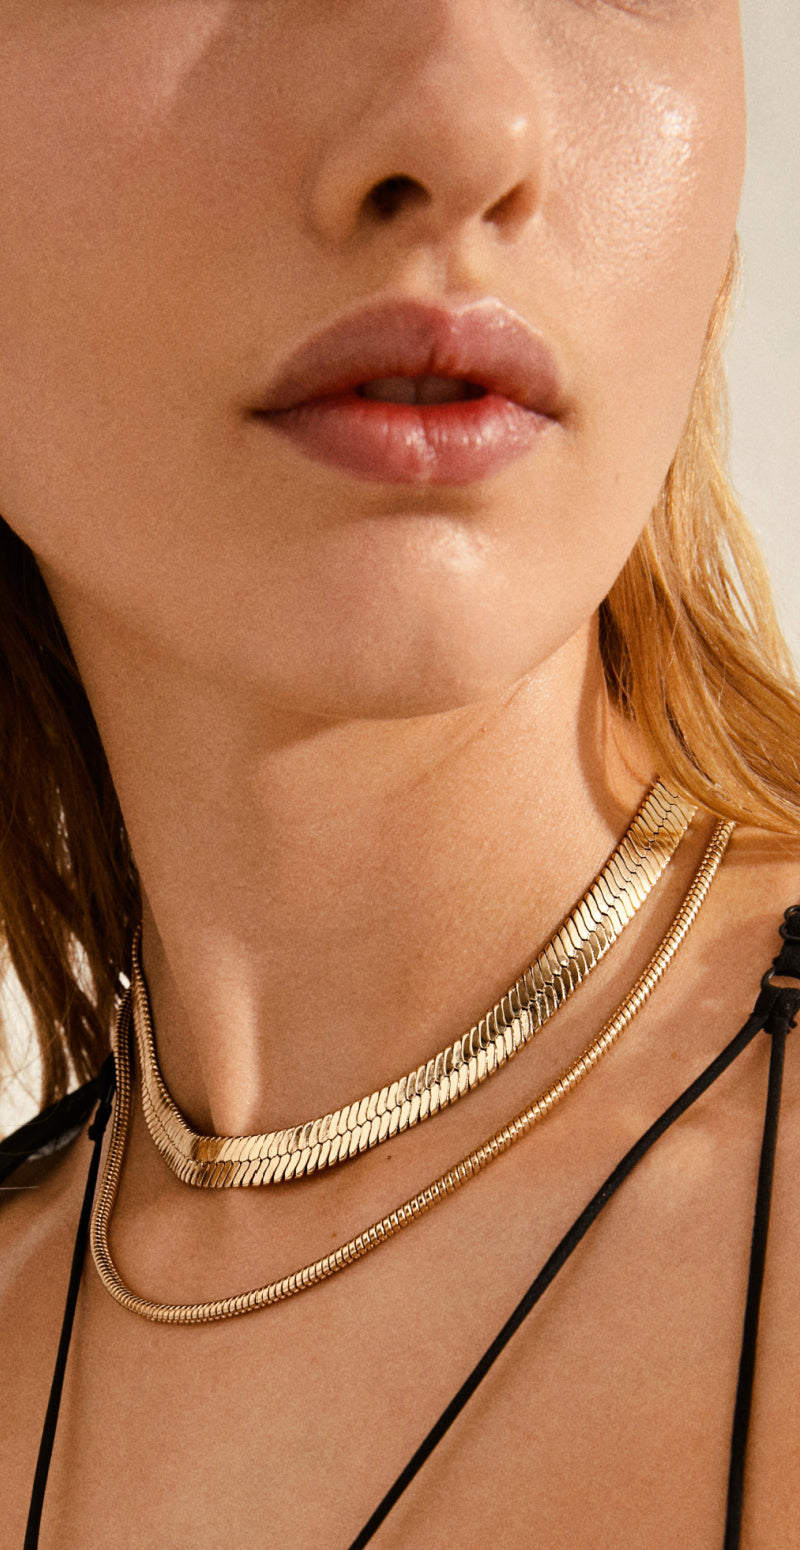 Guld halskæder i et trendy sæt